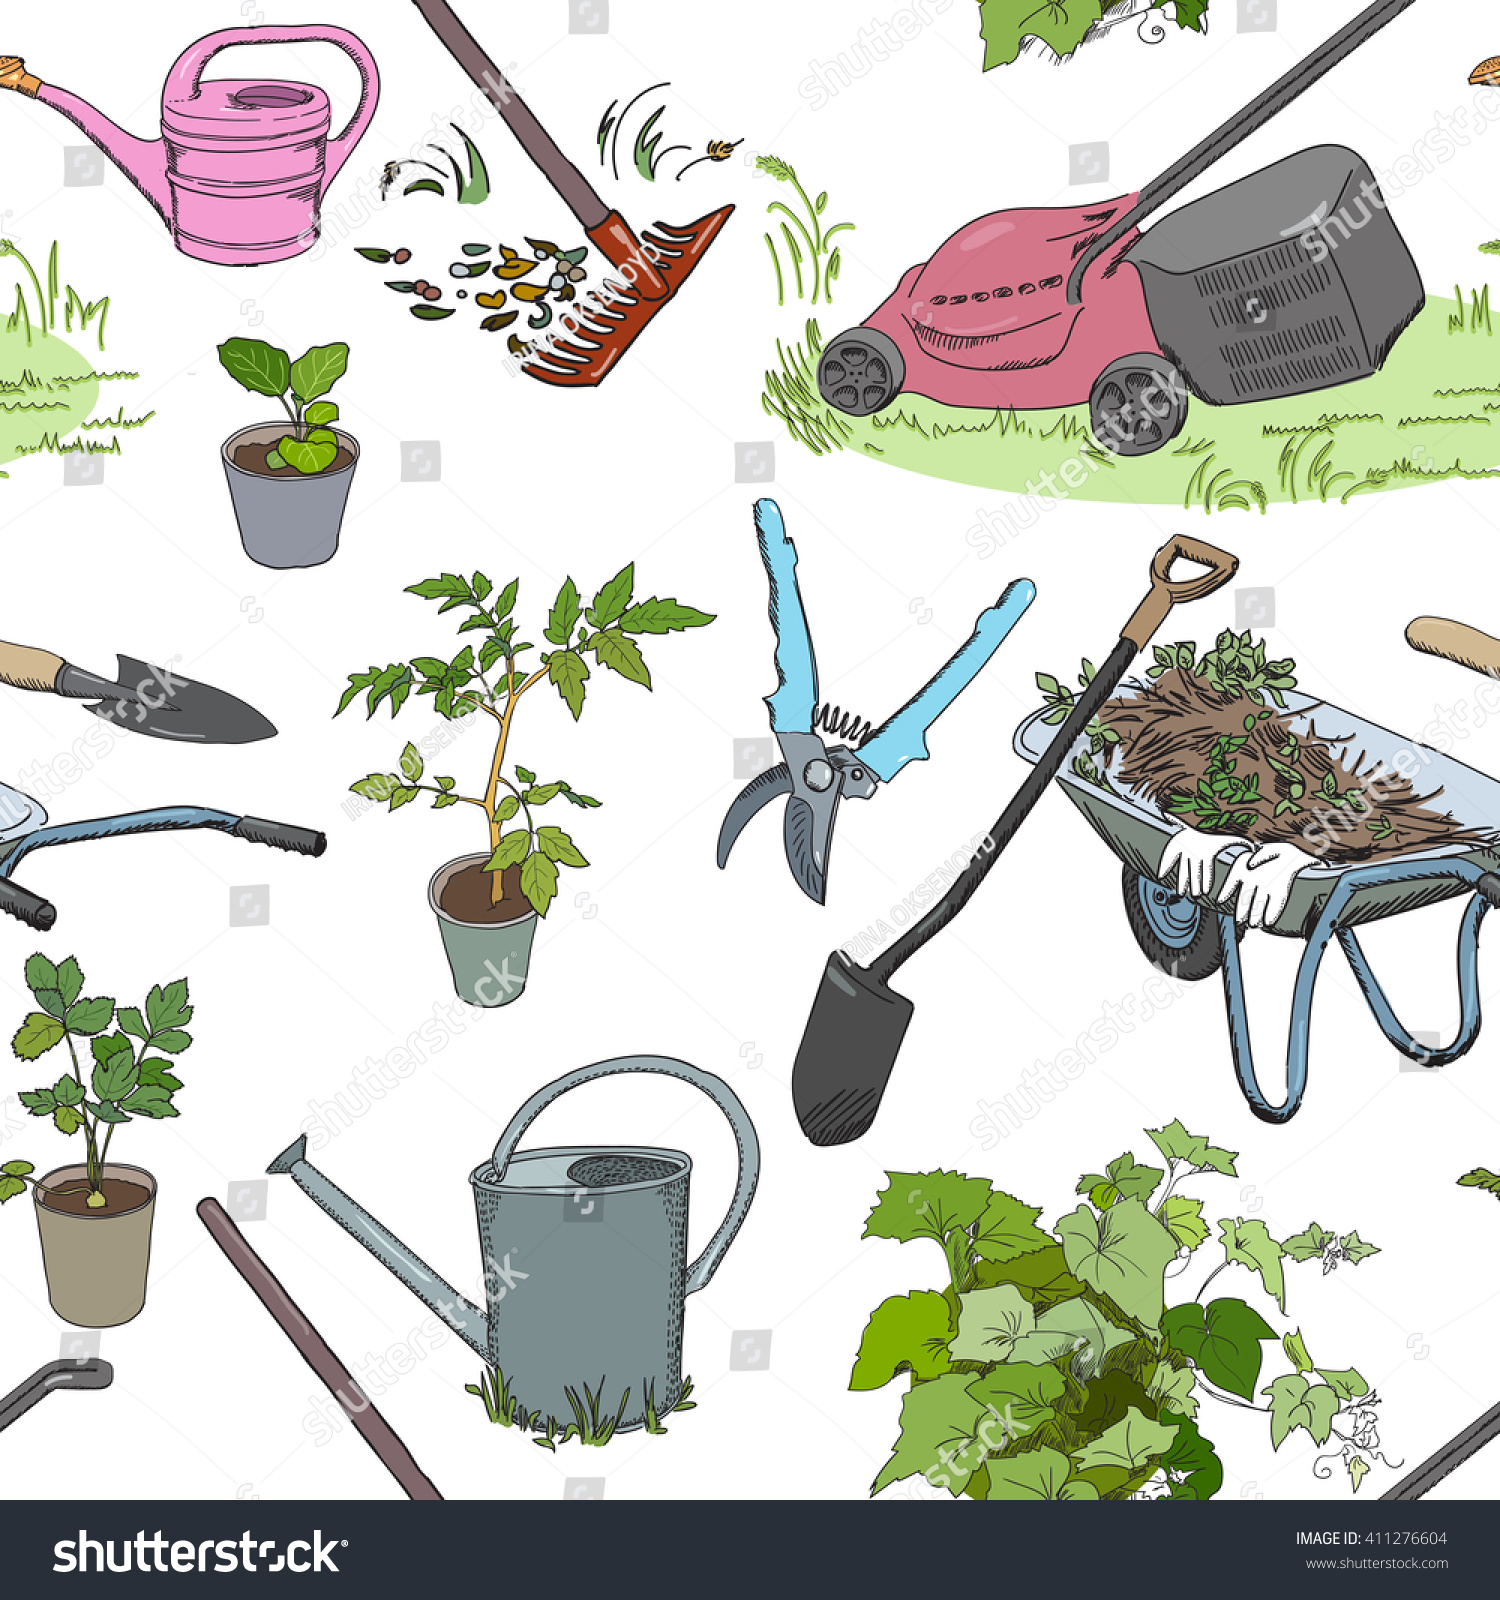 Иллюстрации садовые инструменты